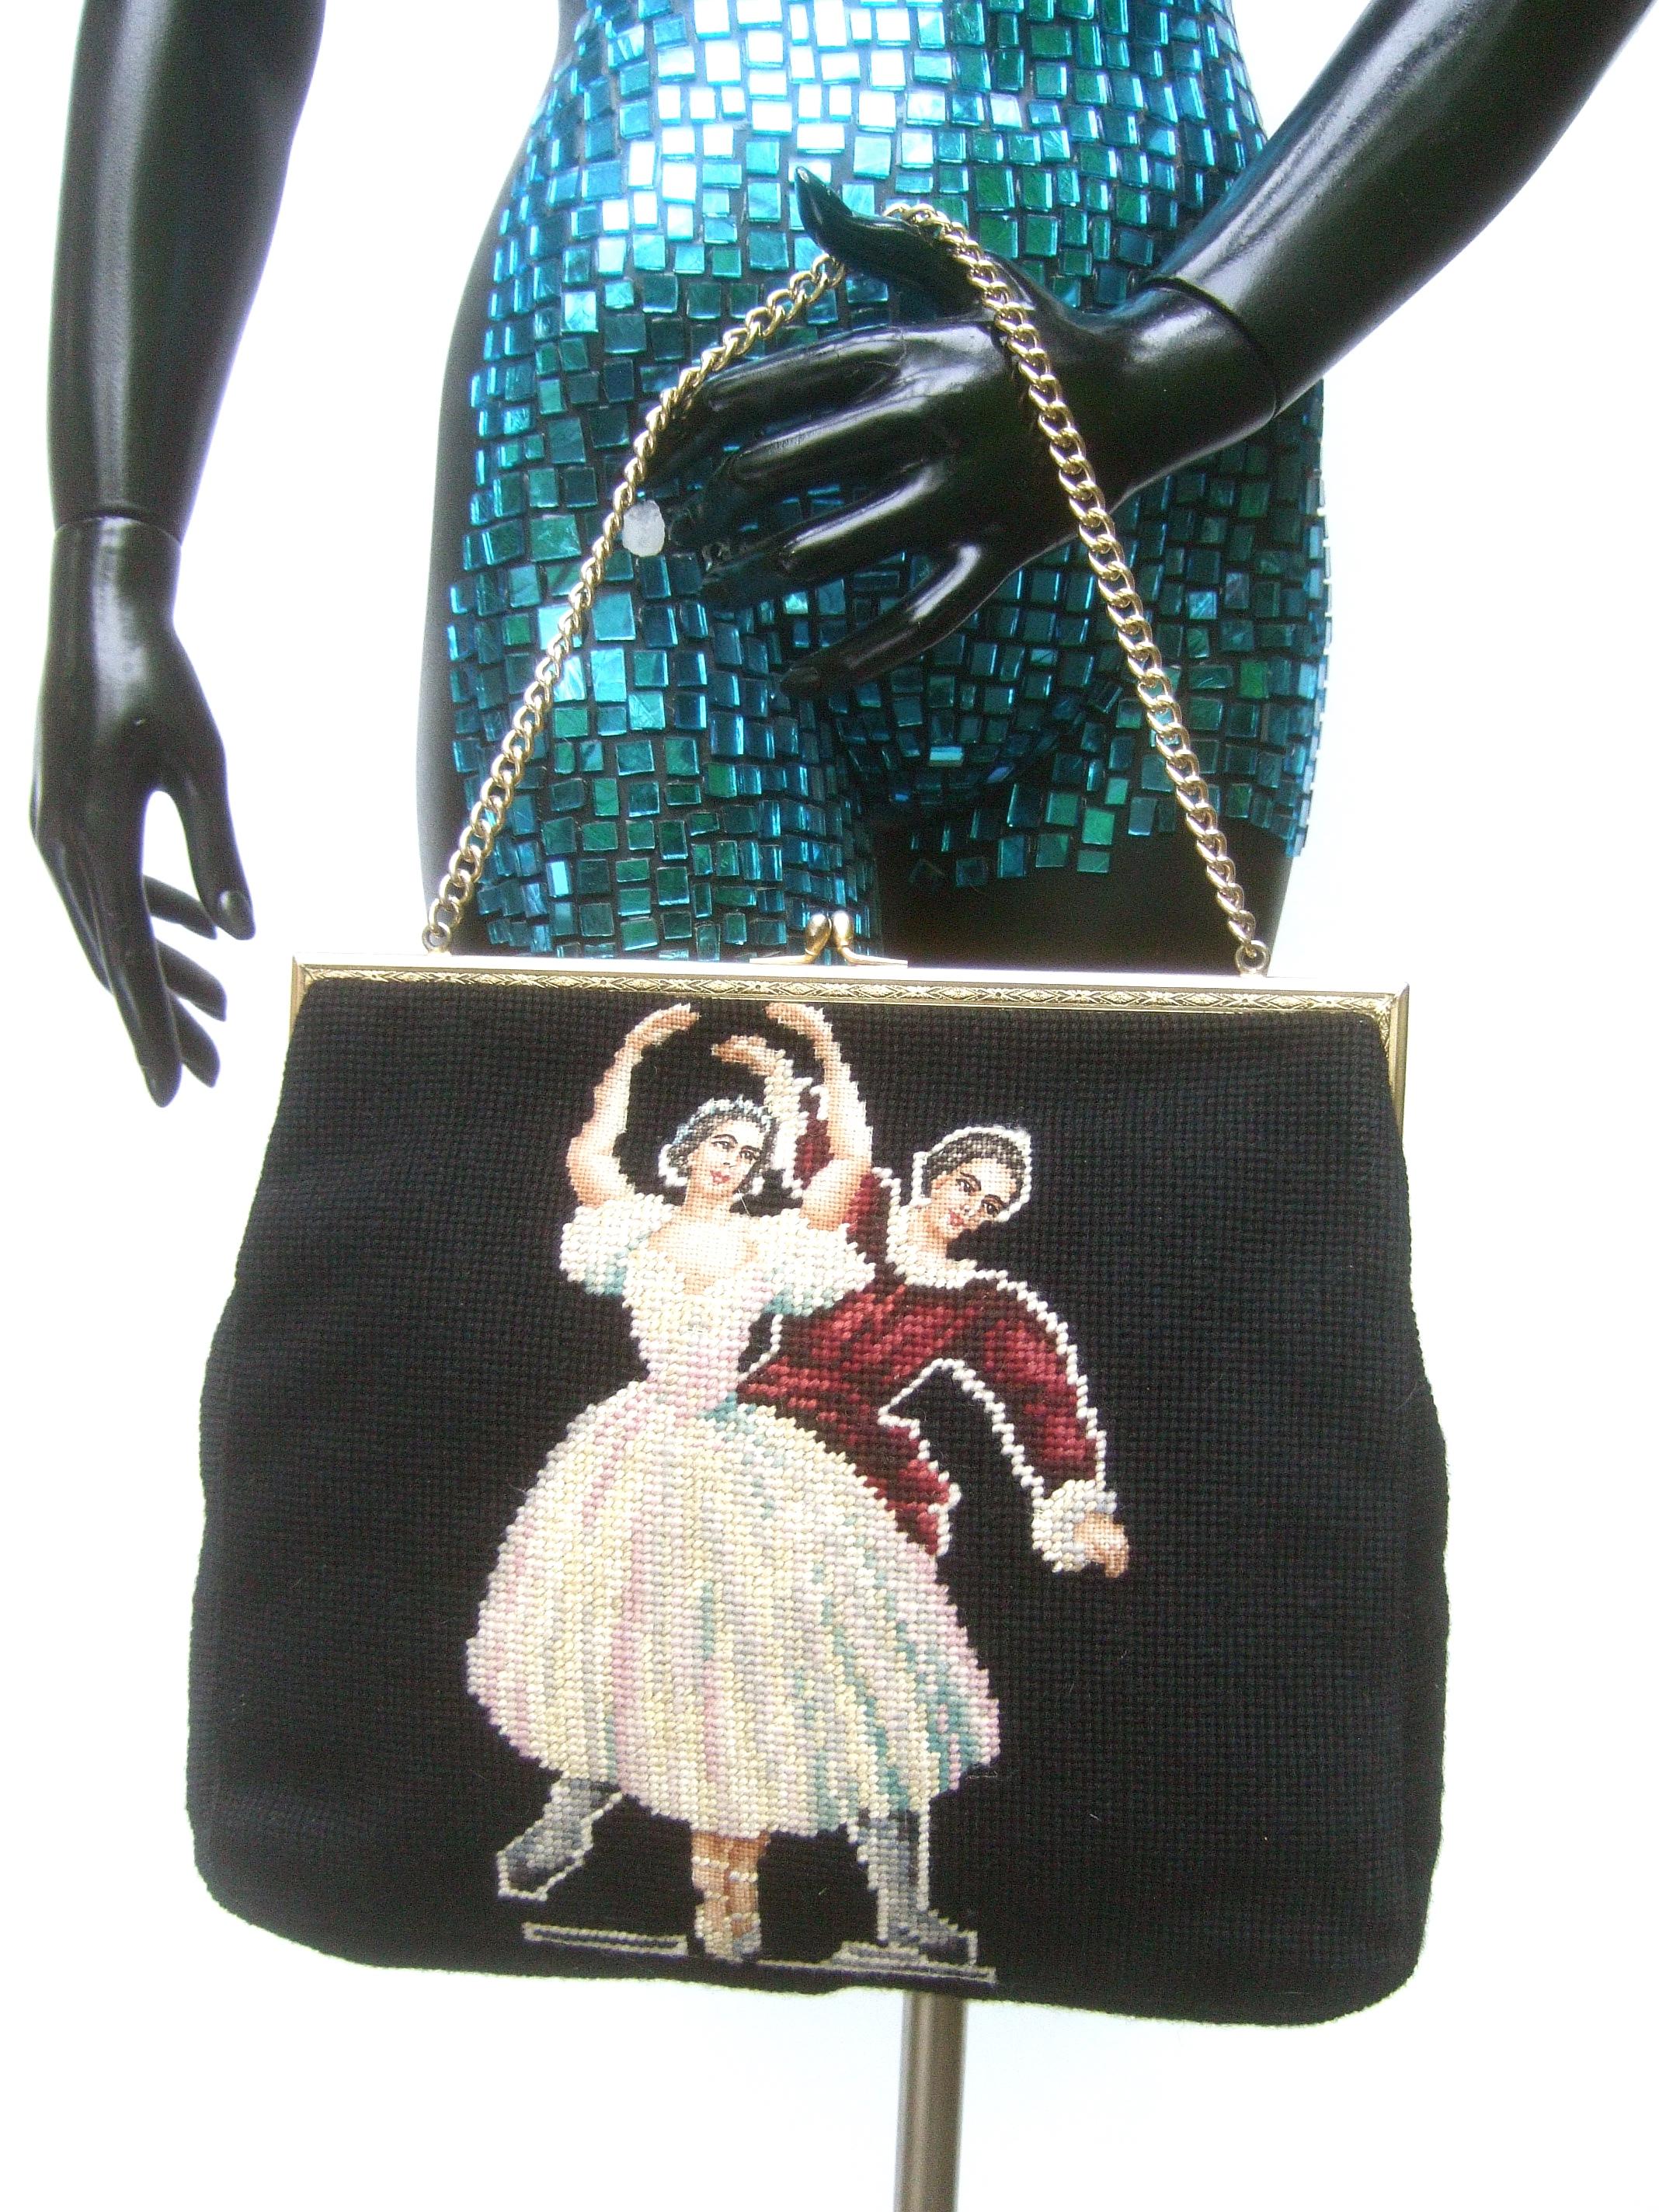 Black Charming Needlepoint Ballet Scene Artisan Handbag c 1960 